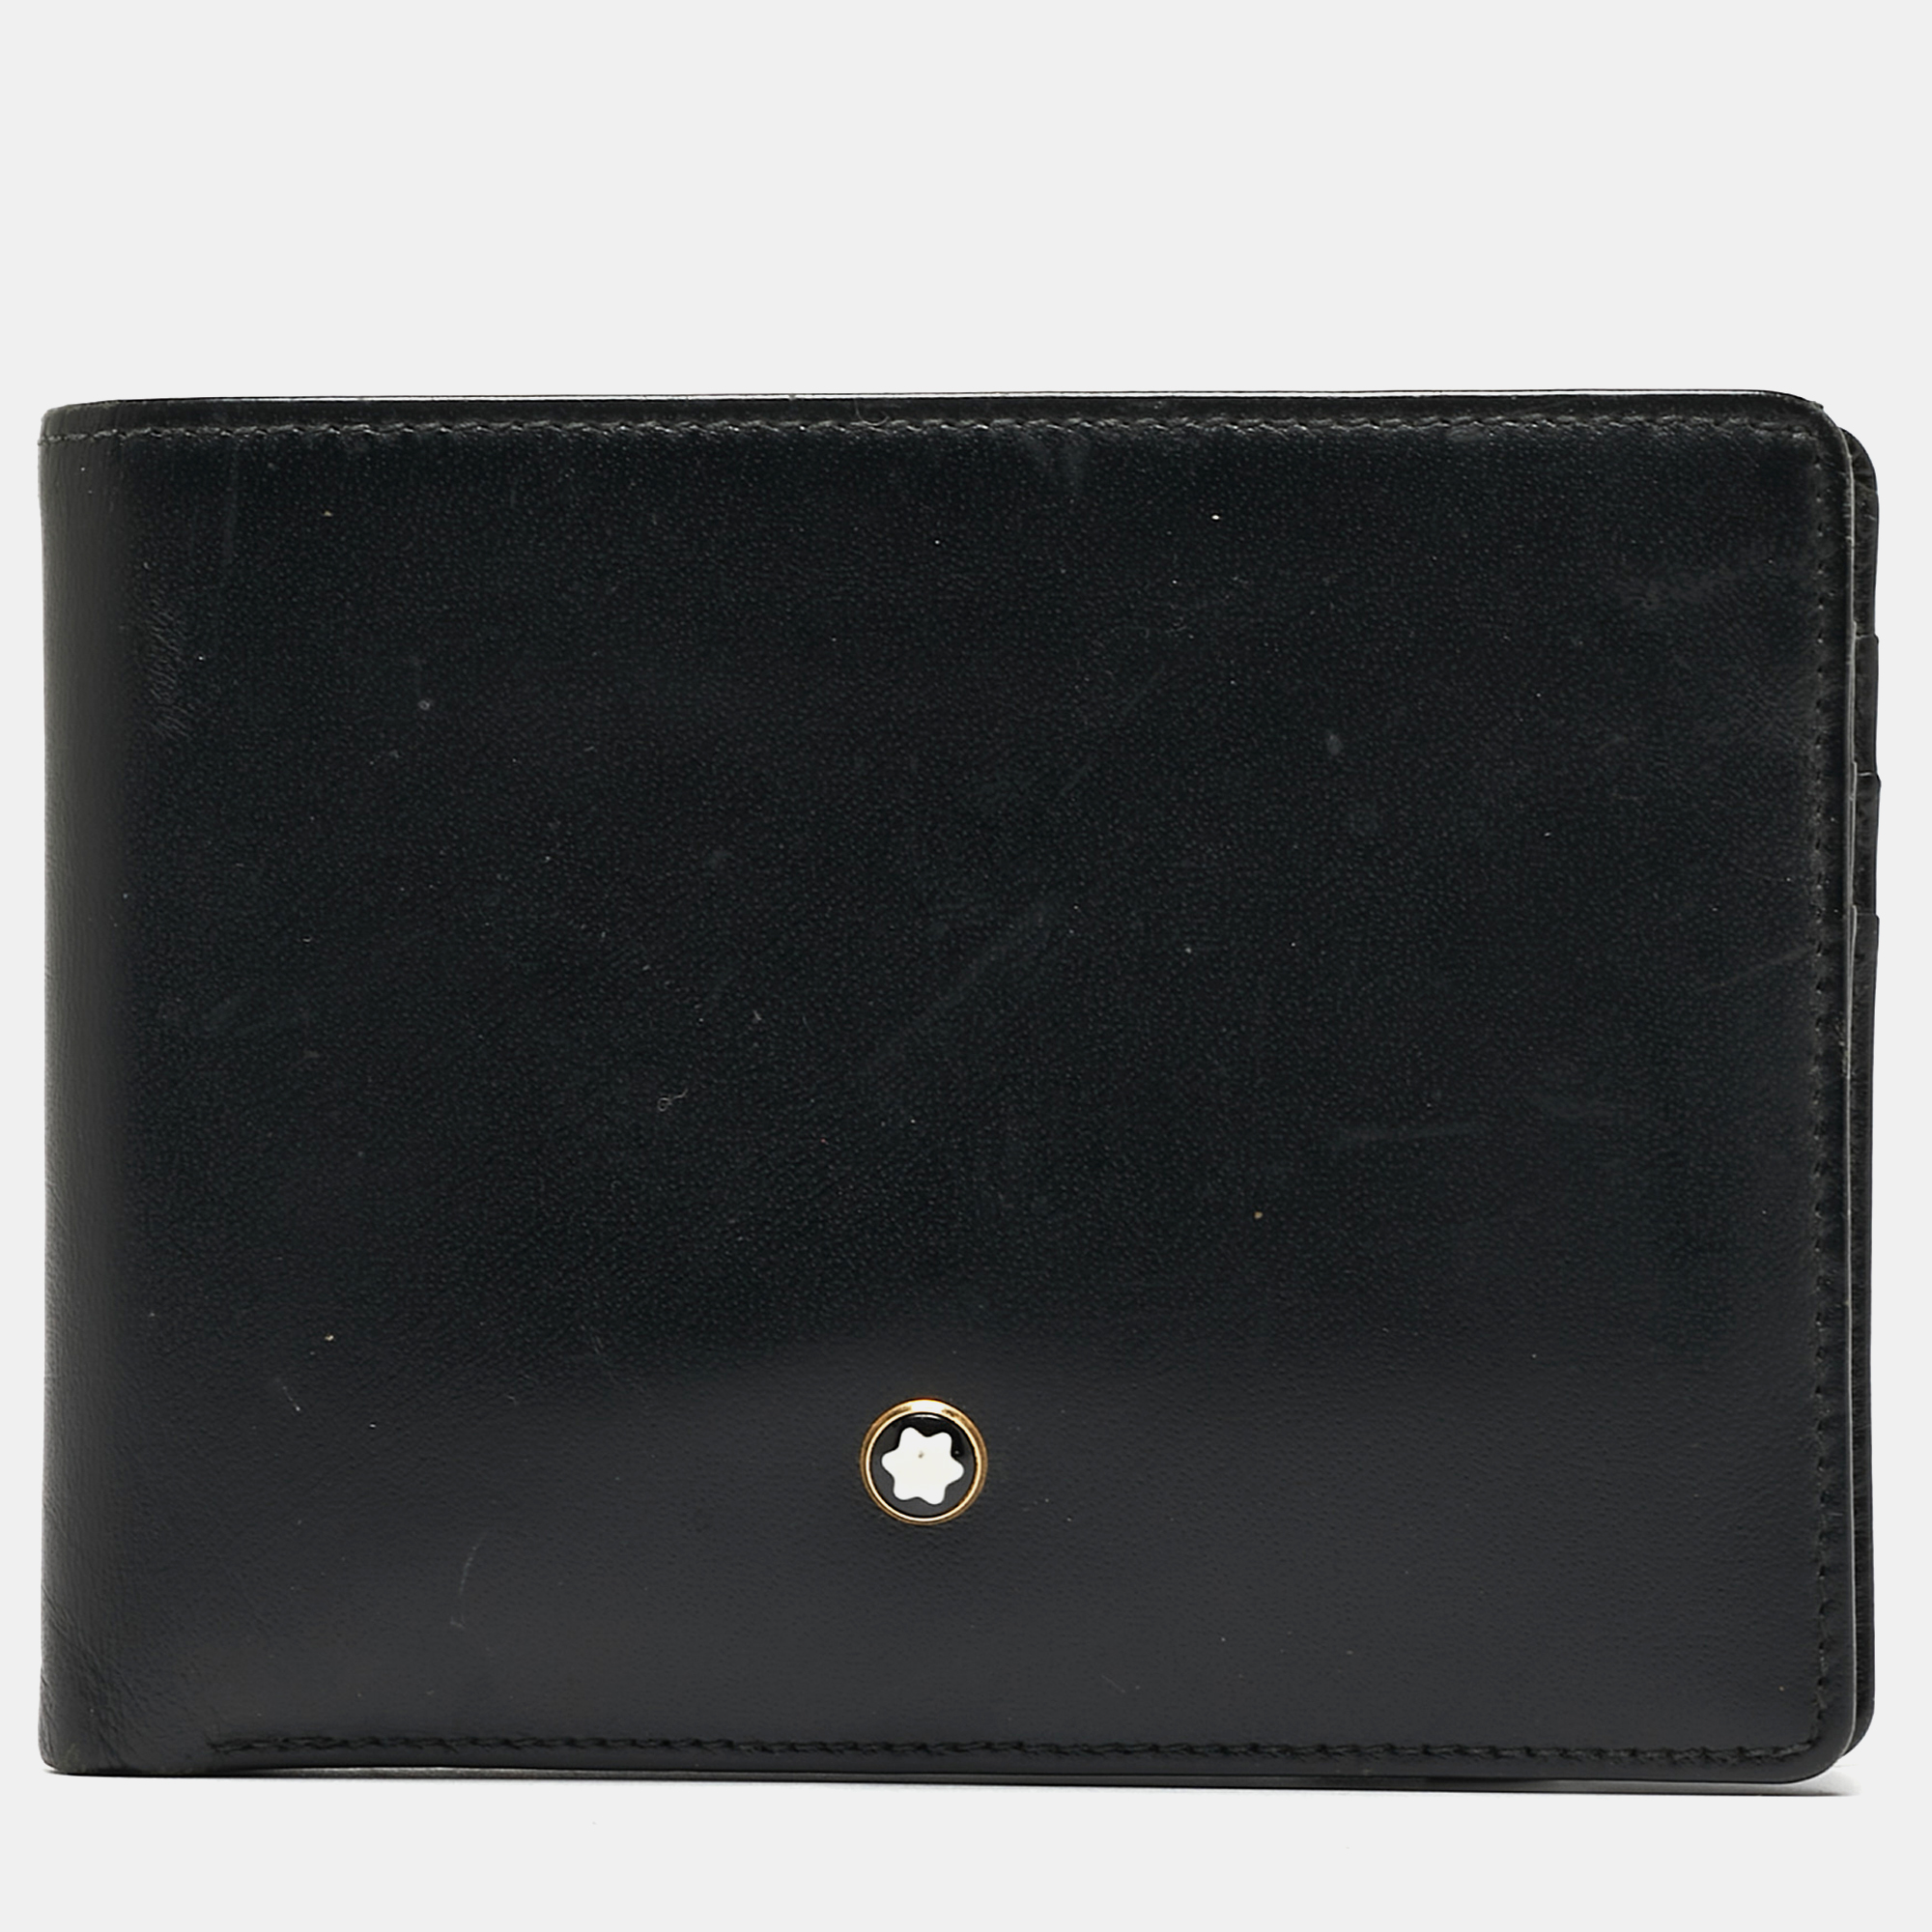 Montblanc black leather meisterstuck bifold wallet